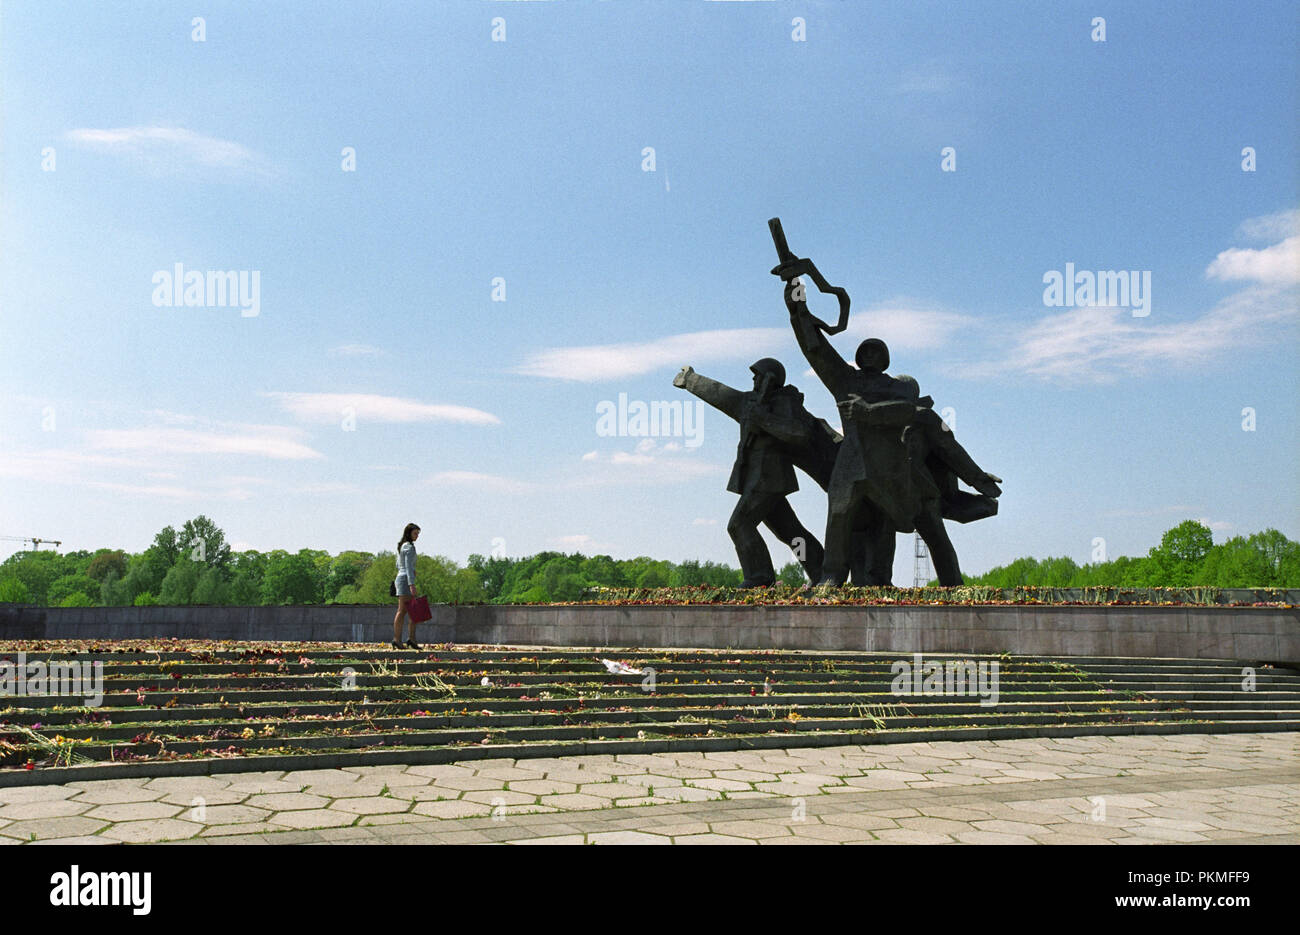 Monument commémoratif de guerre soviétique à Riga Lettonie Mai 2007 érigé en 1985 pour commémorer la victoire de l'armée soviétique sur l'Allemagne nazie pendant la Seconde Guerre mondiale Banque D'Images